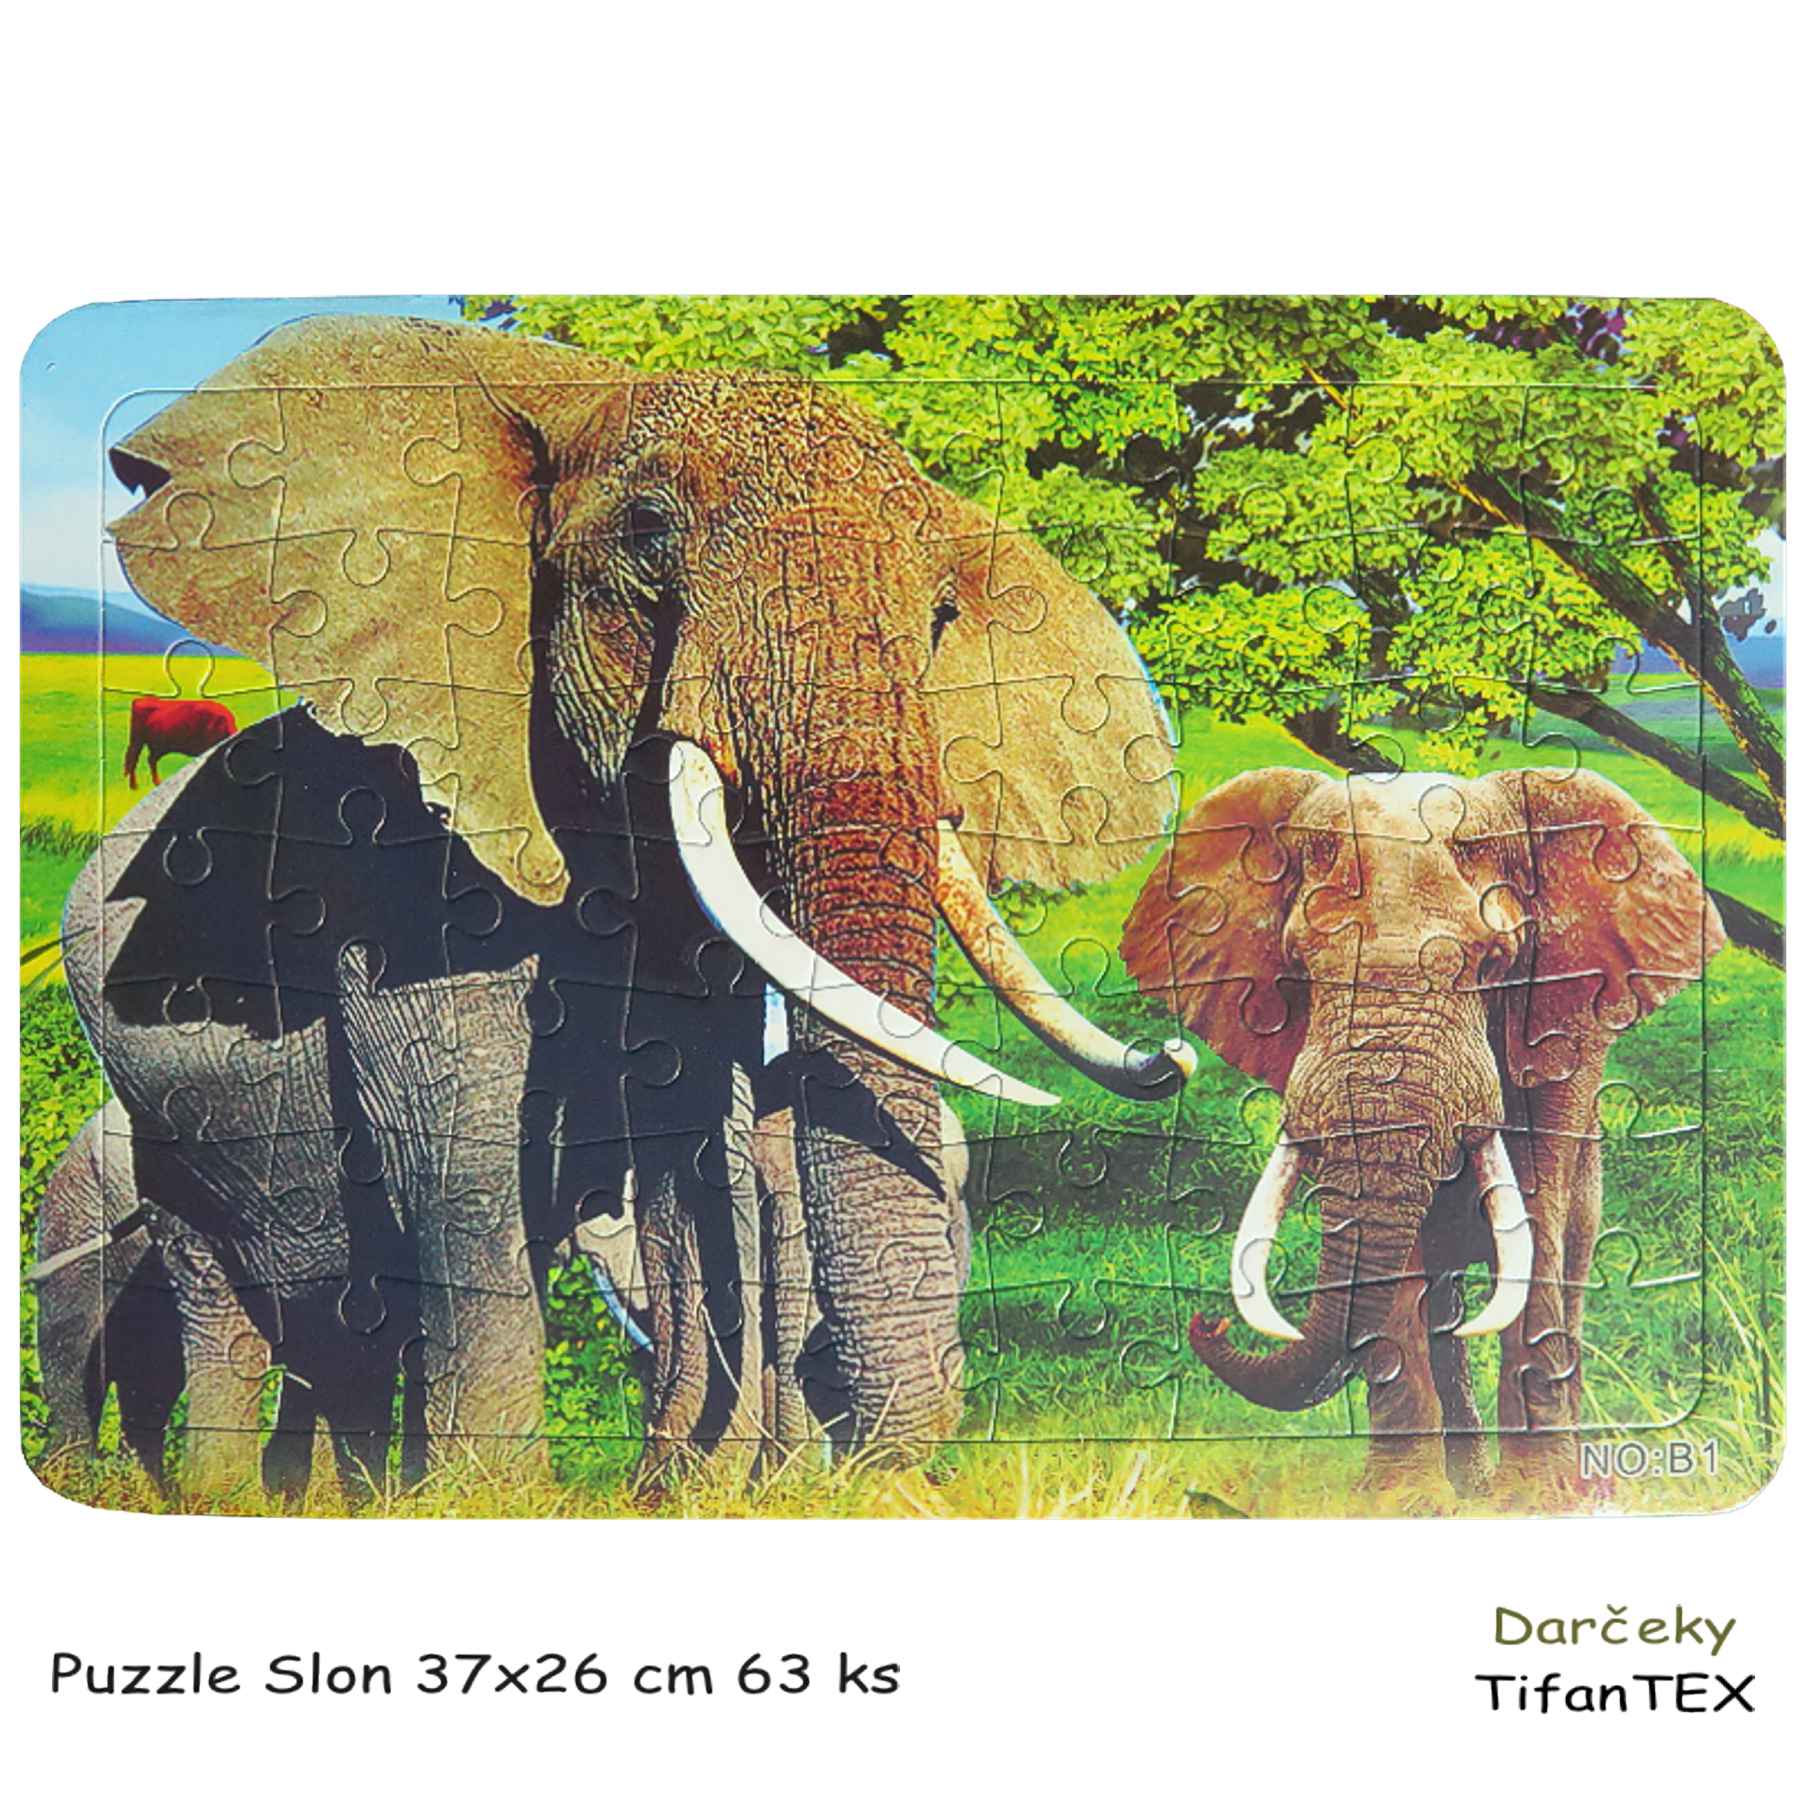 Puzzle Slon 37x26 cm 63 ks